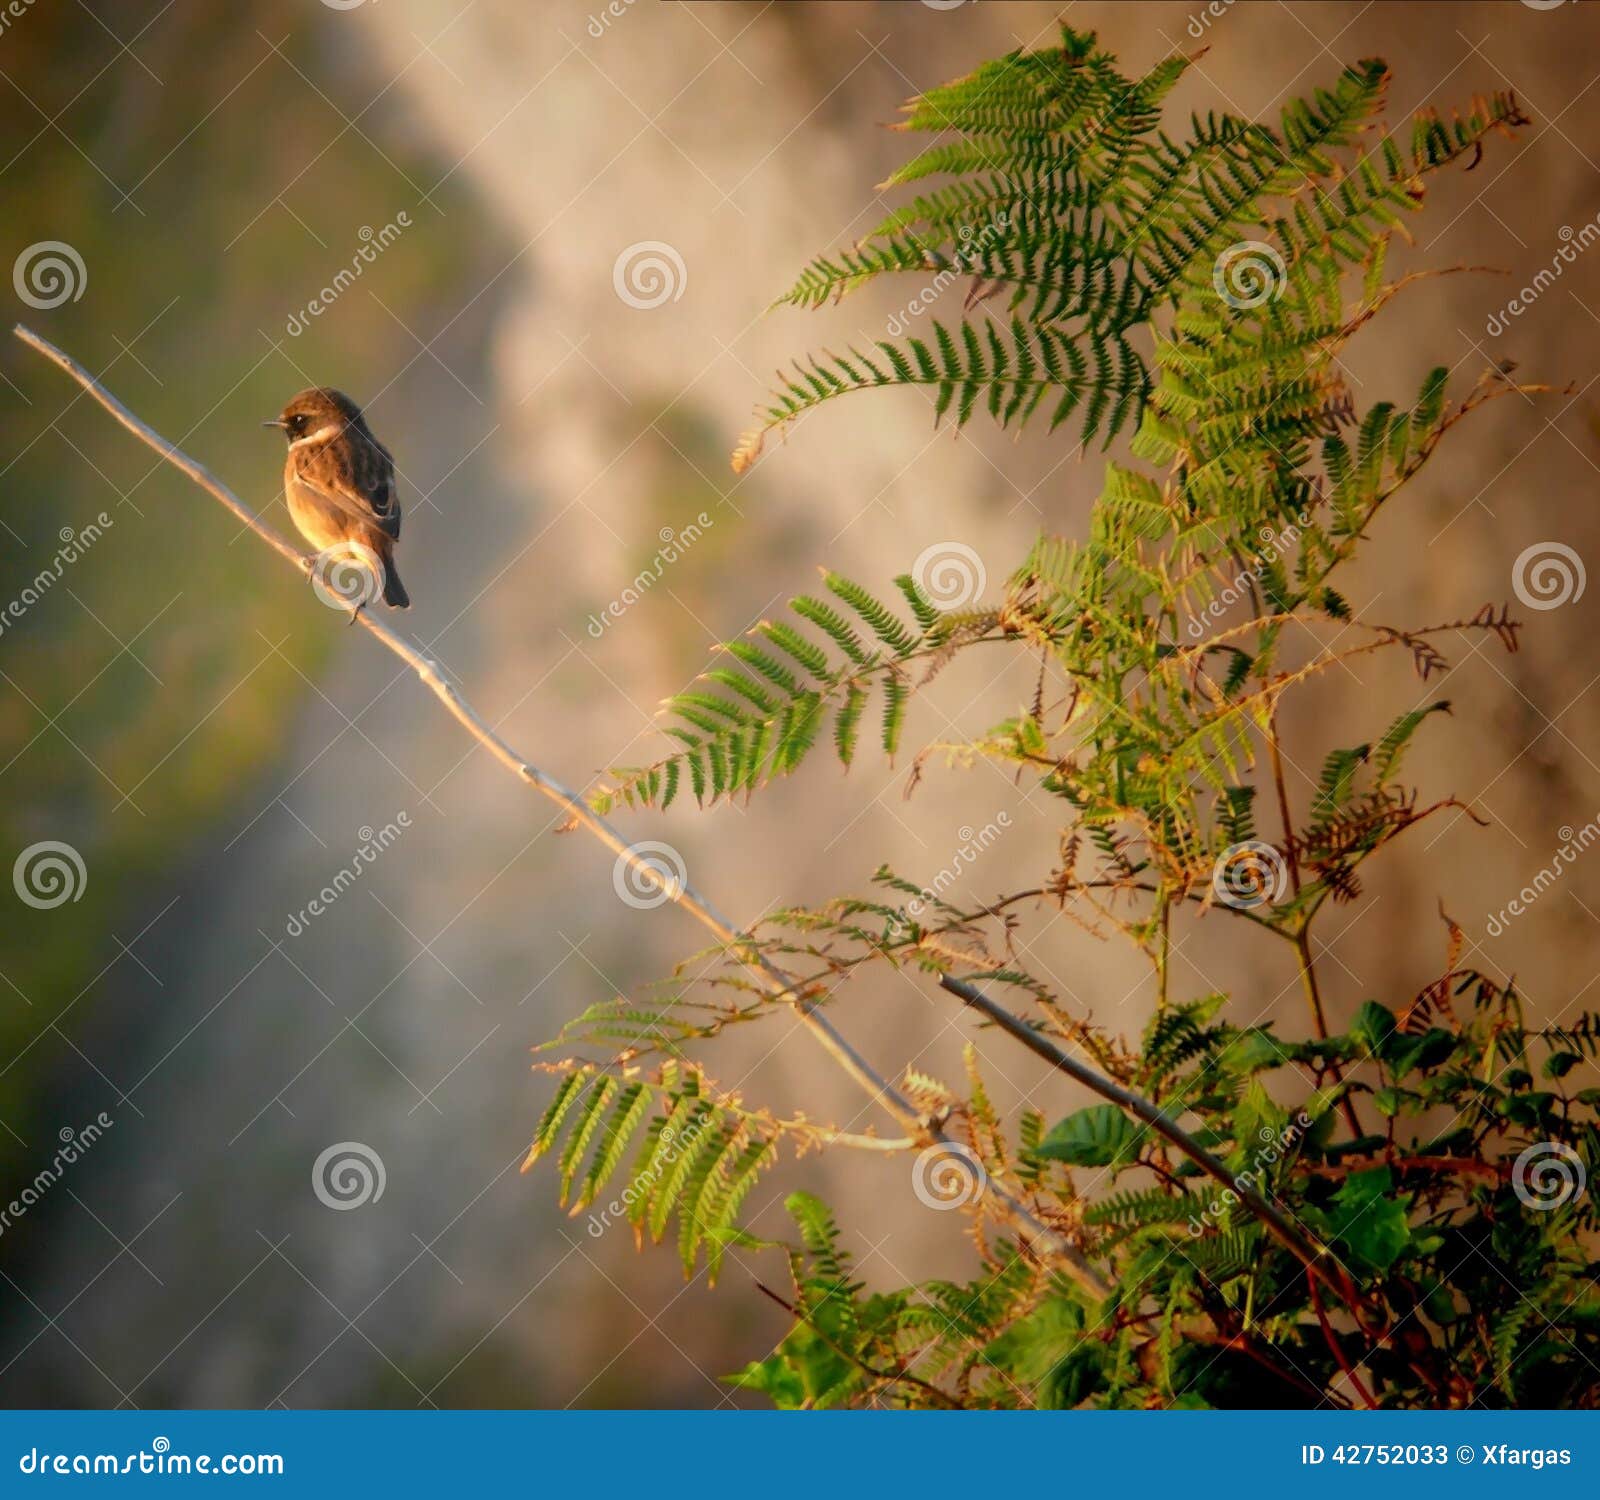 eurasian tree sparrow (passer montanus) over branch